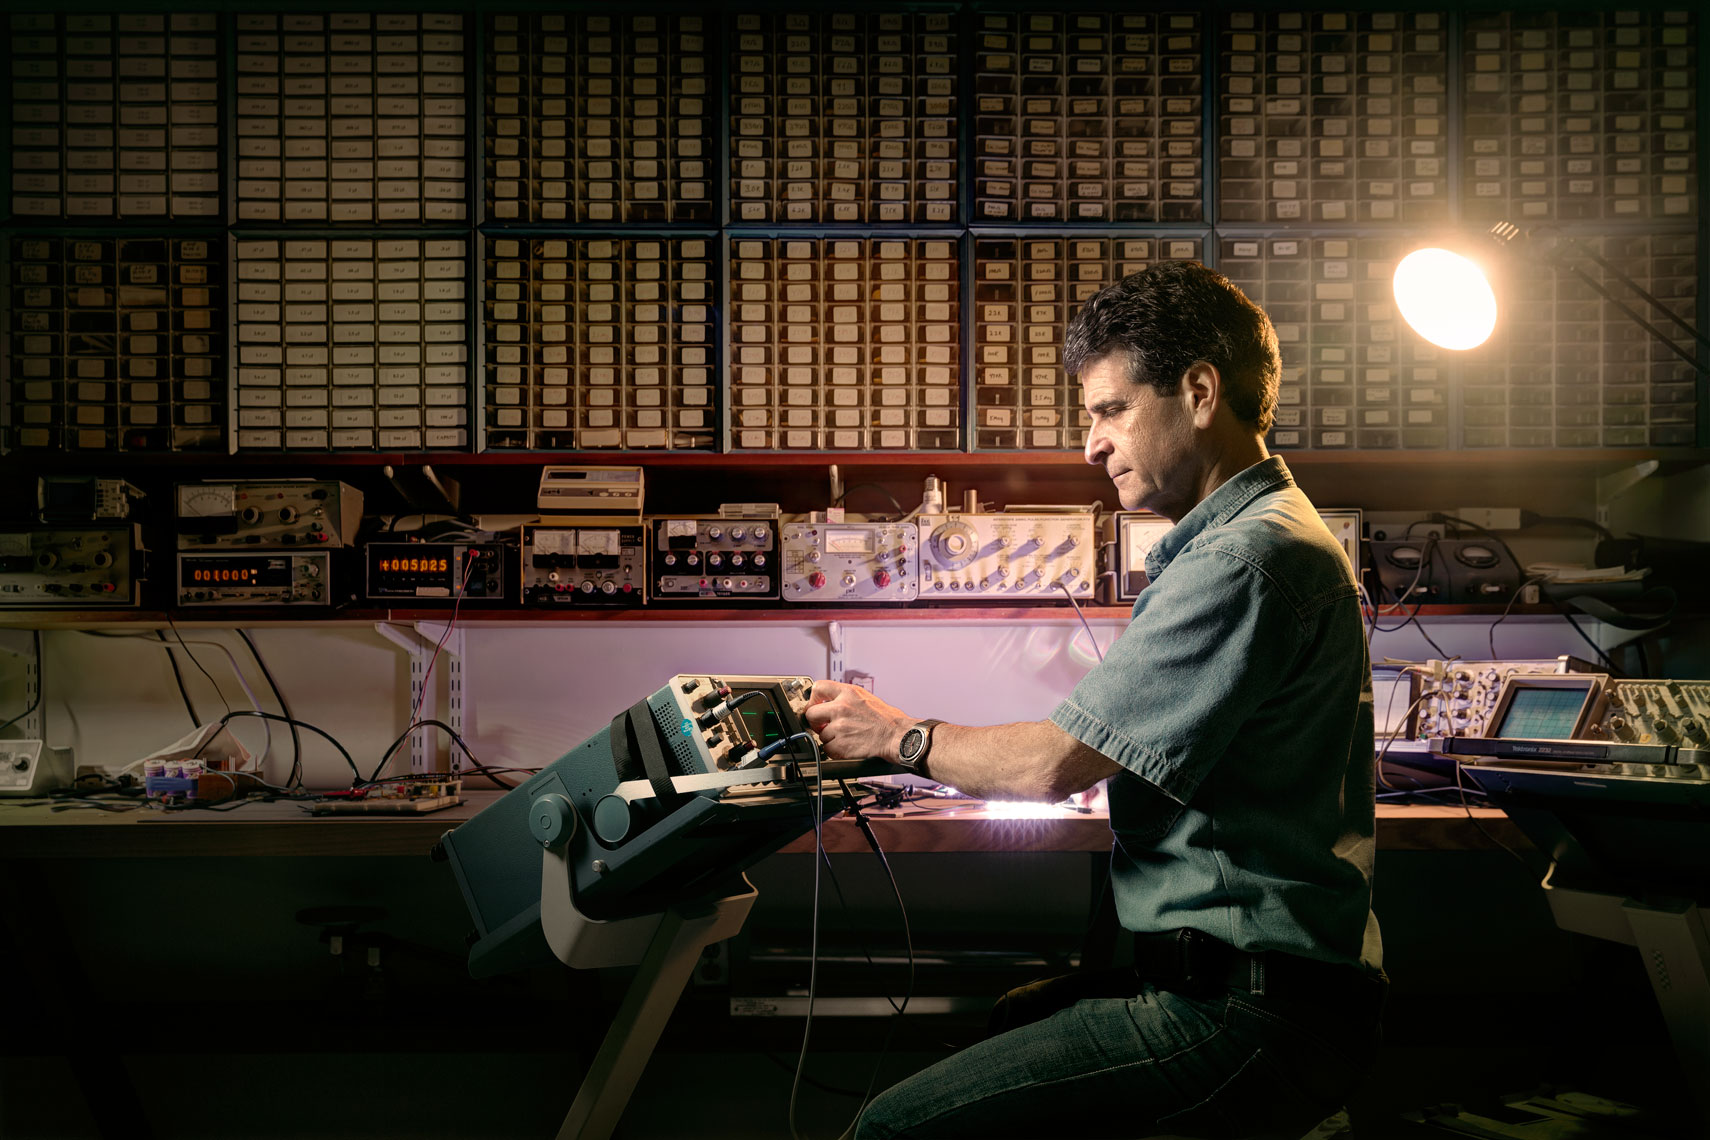 Dean Kamen in Engine of Progress: WIRED UK 